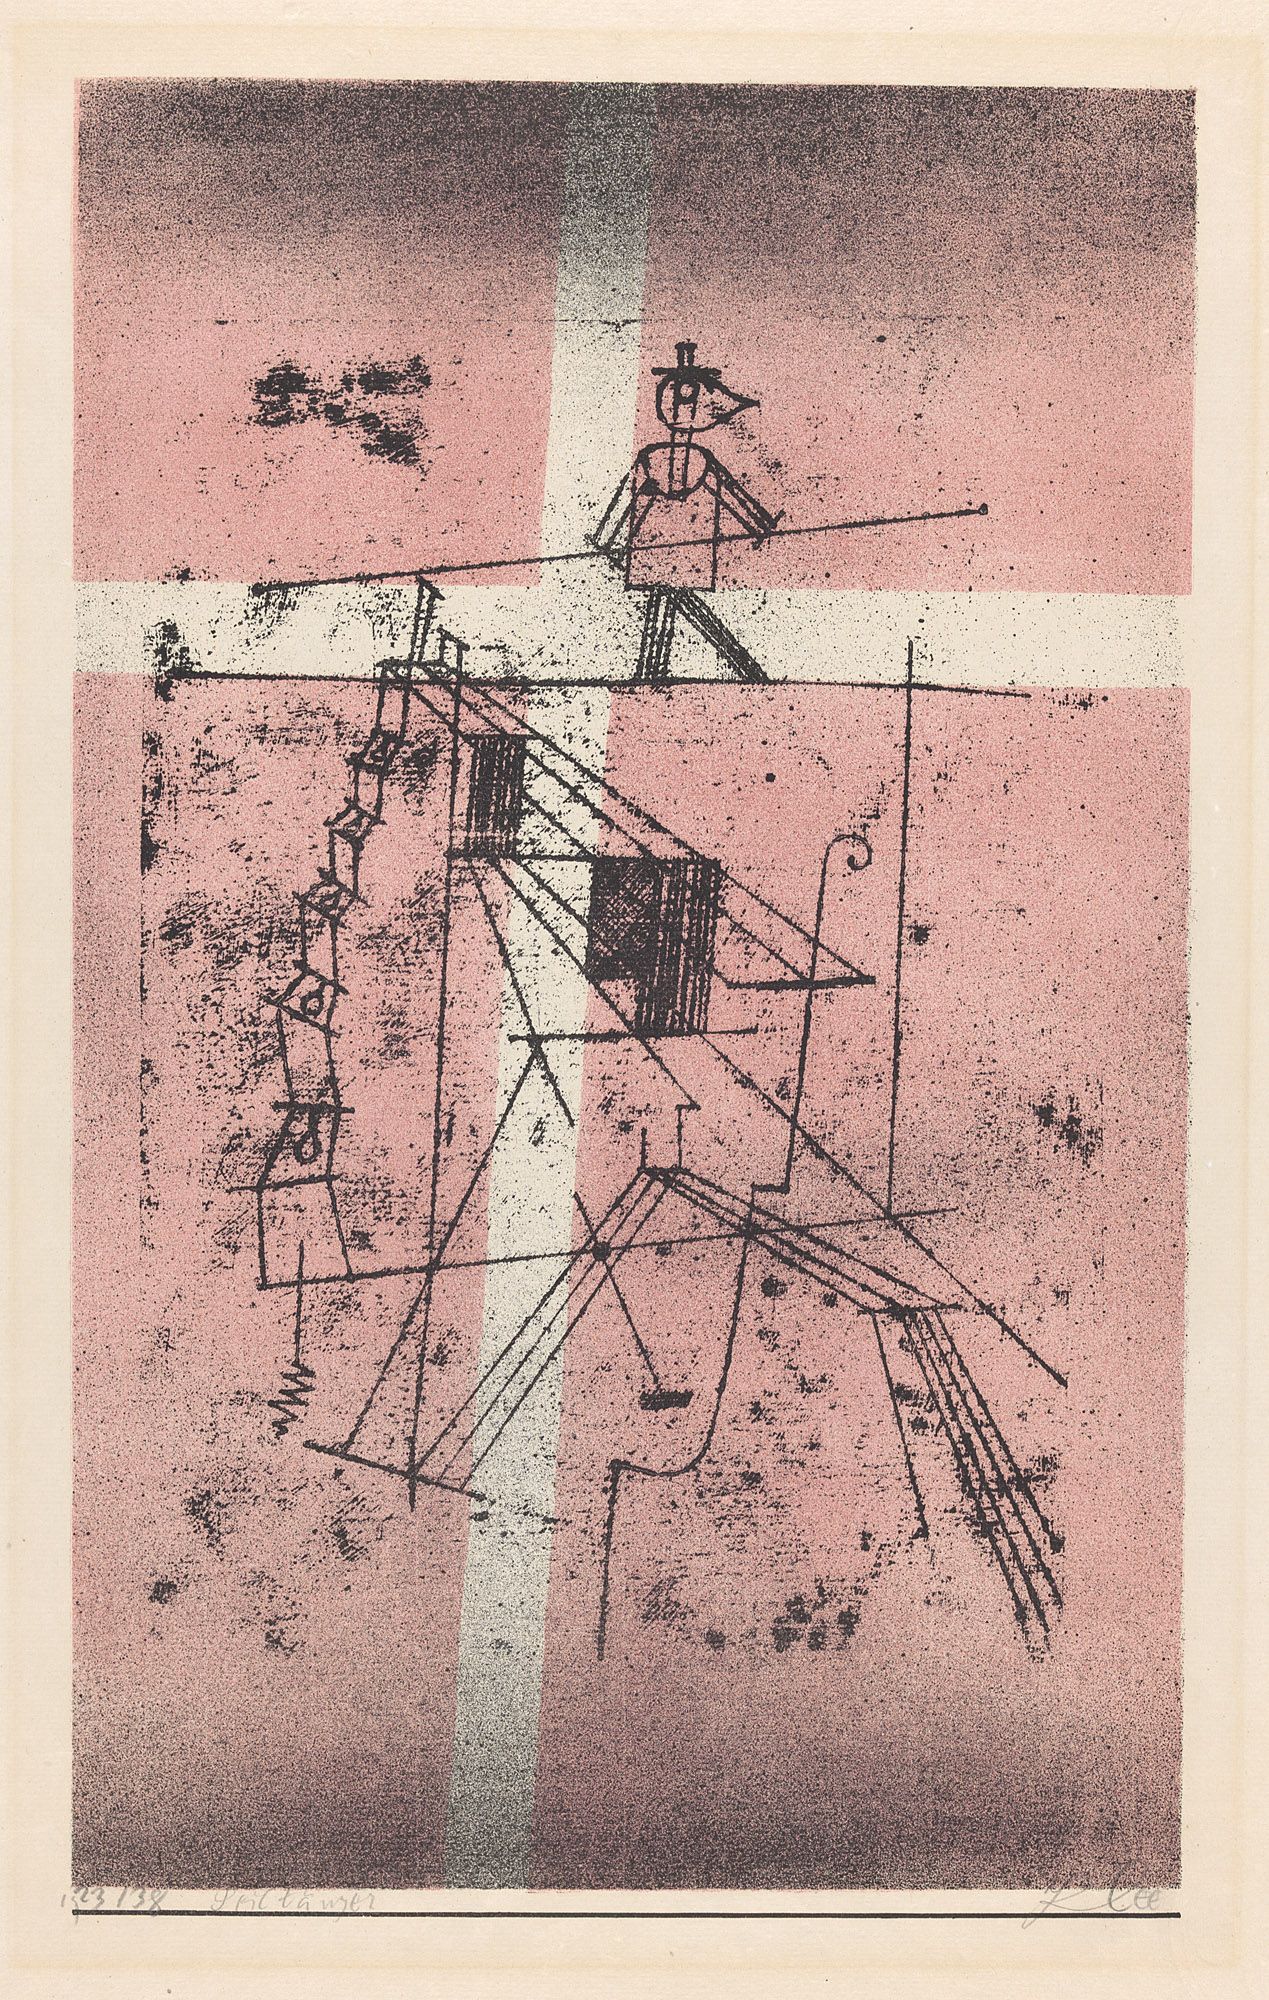 Seiltänzer by Paul Klee - 1923 - 48,7 x 32,2 cm  Zentrum Paul Klee